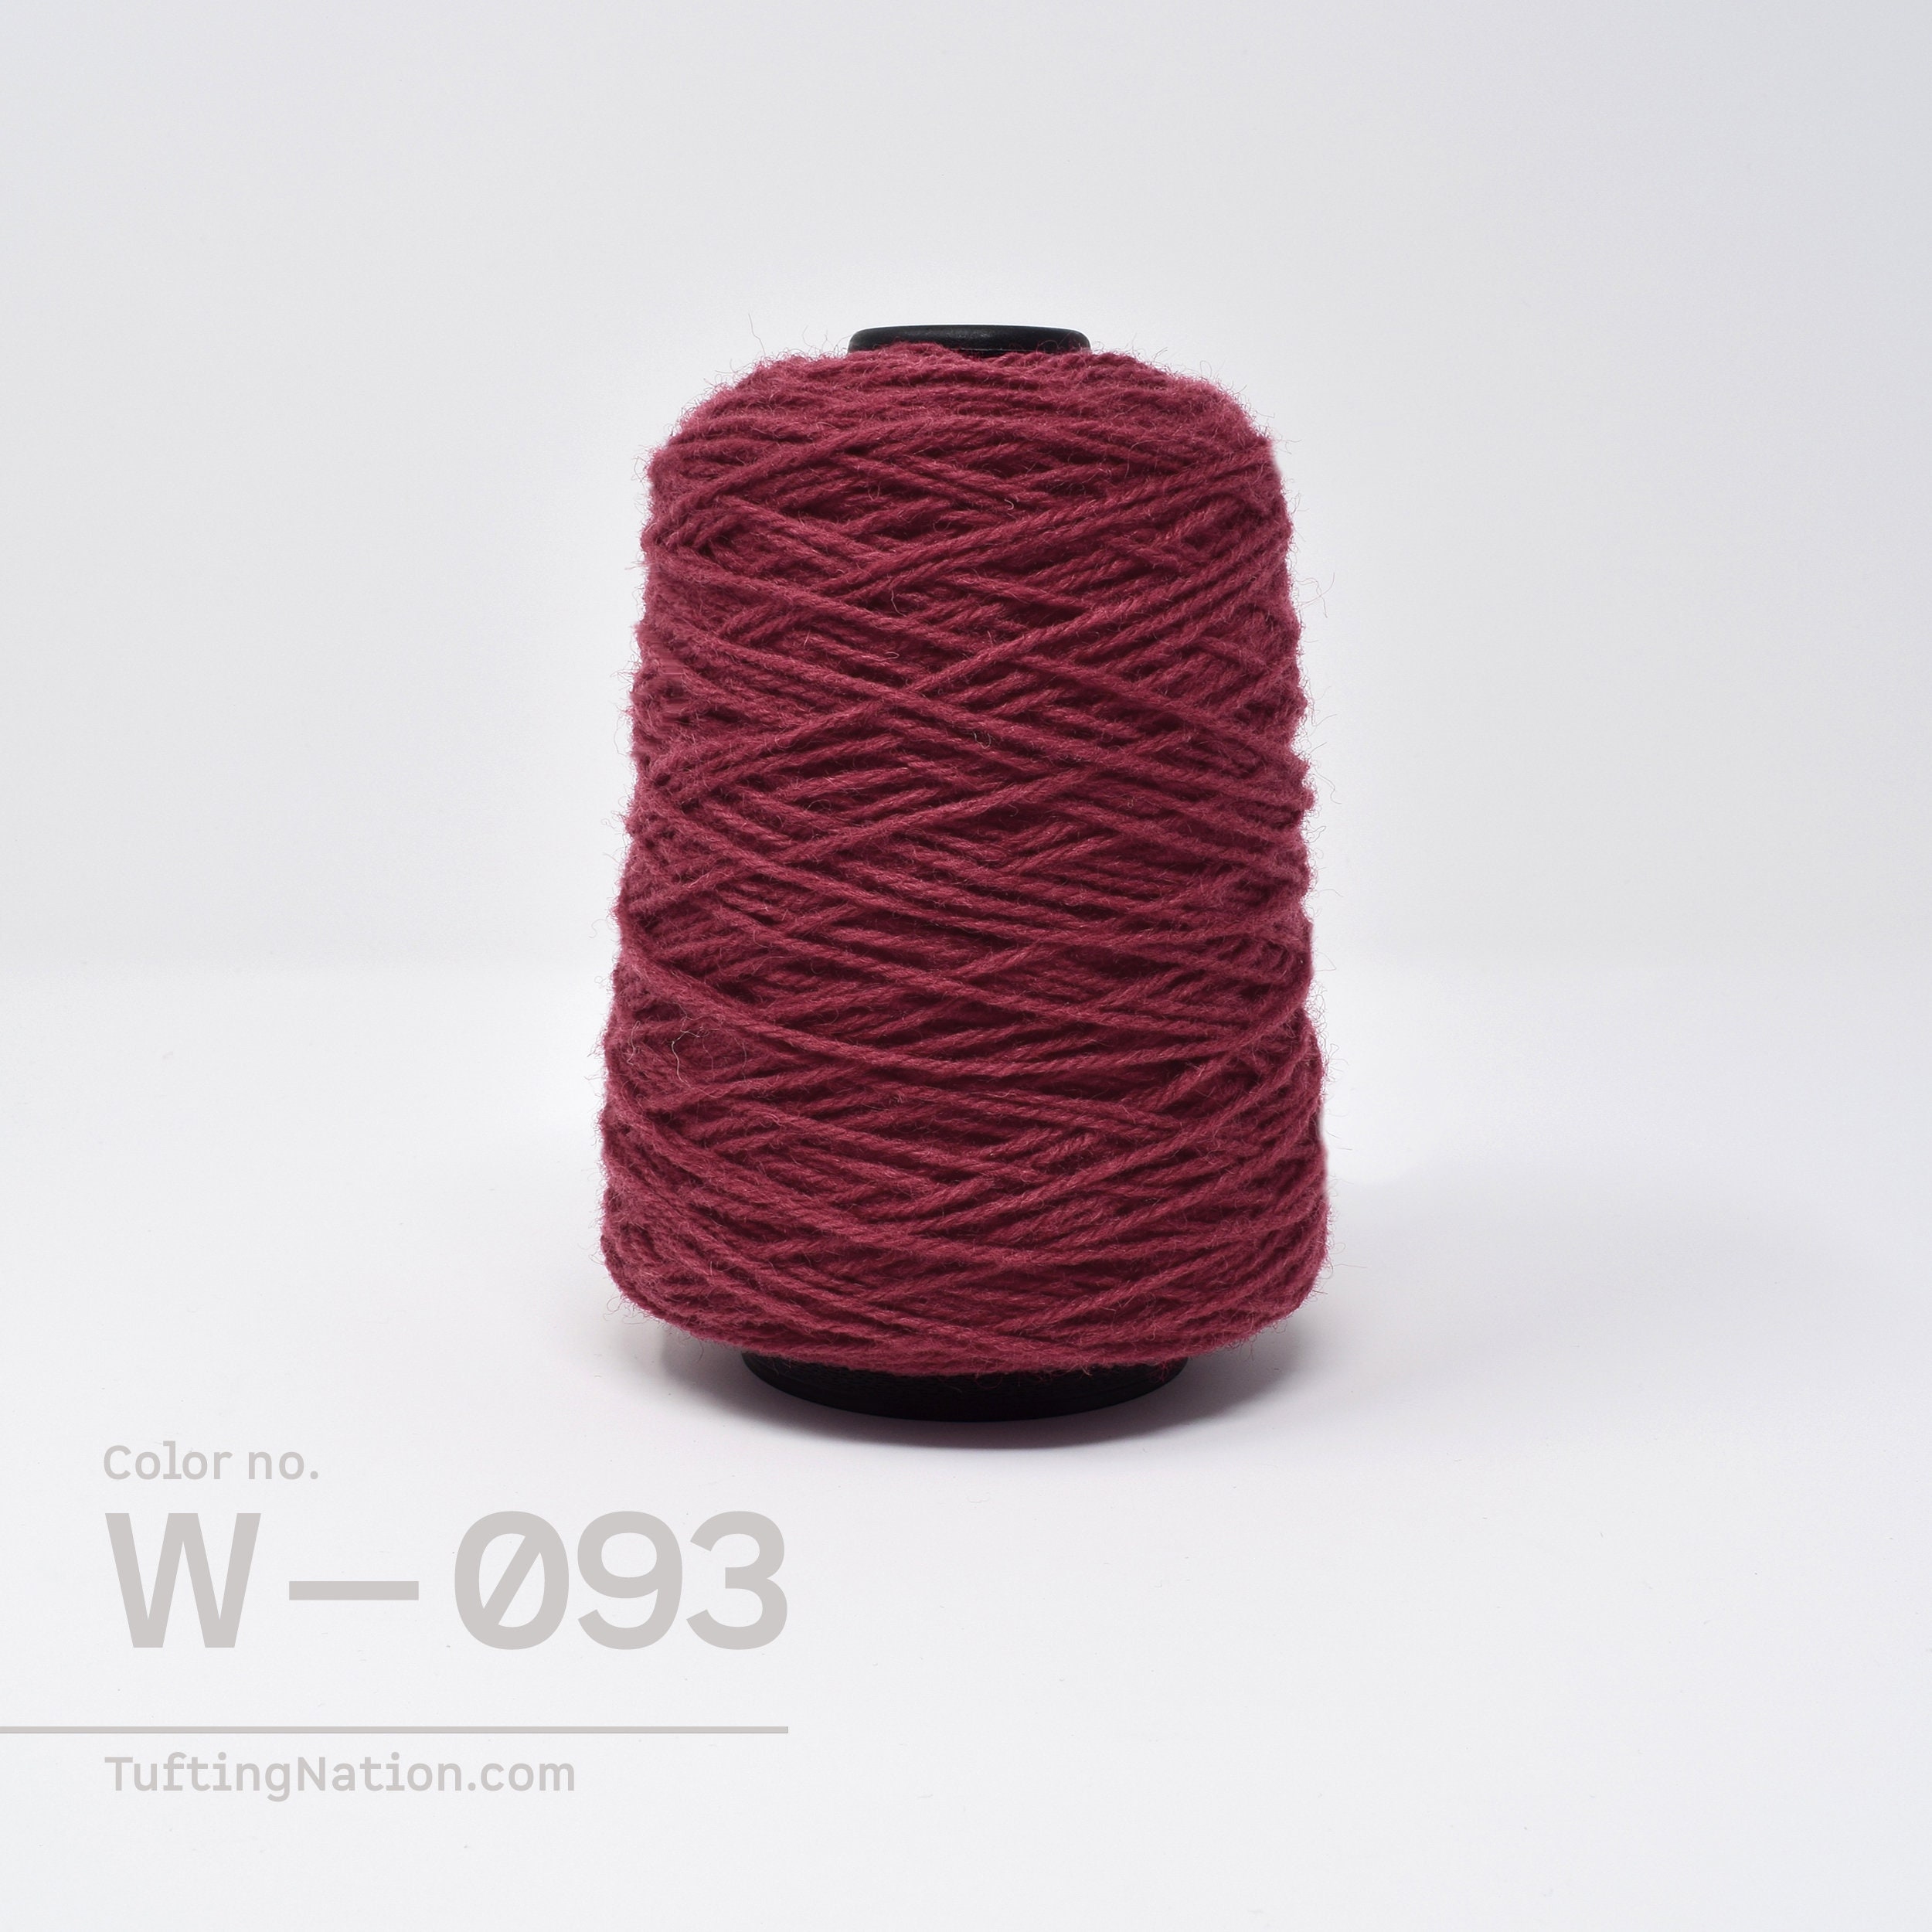 Enfile-laine tufting : un indispensable à avoir ! – LeTufting